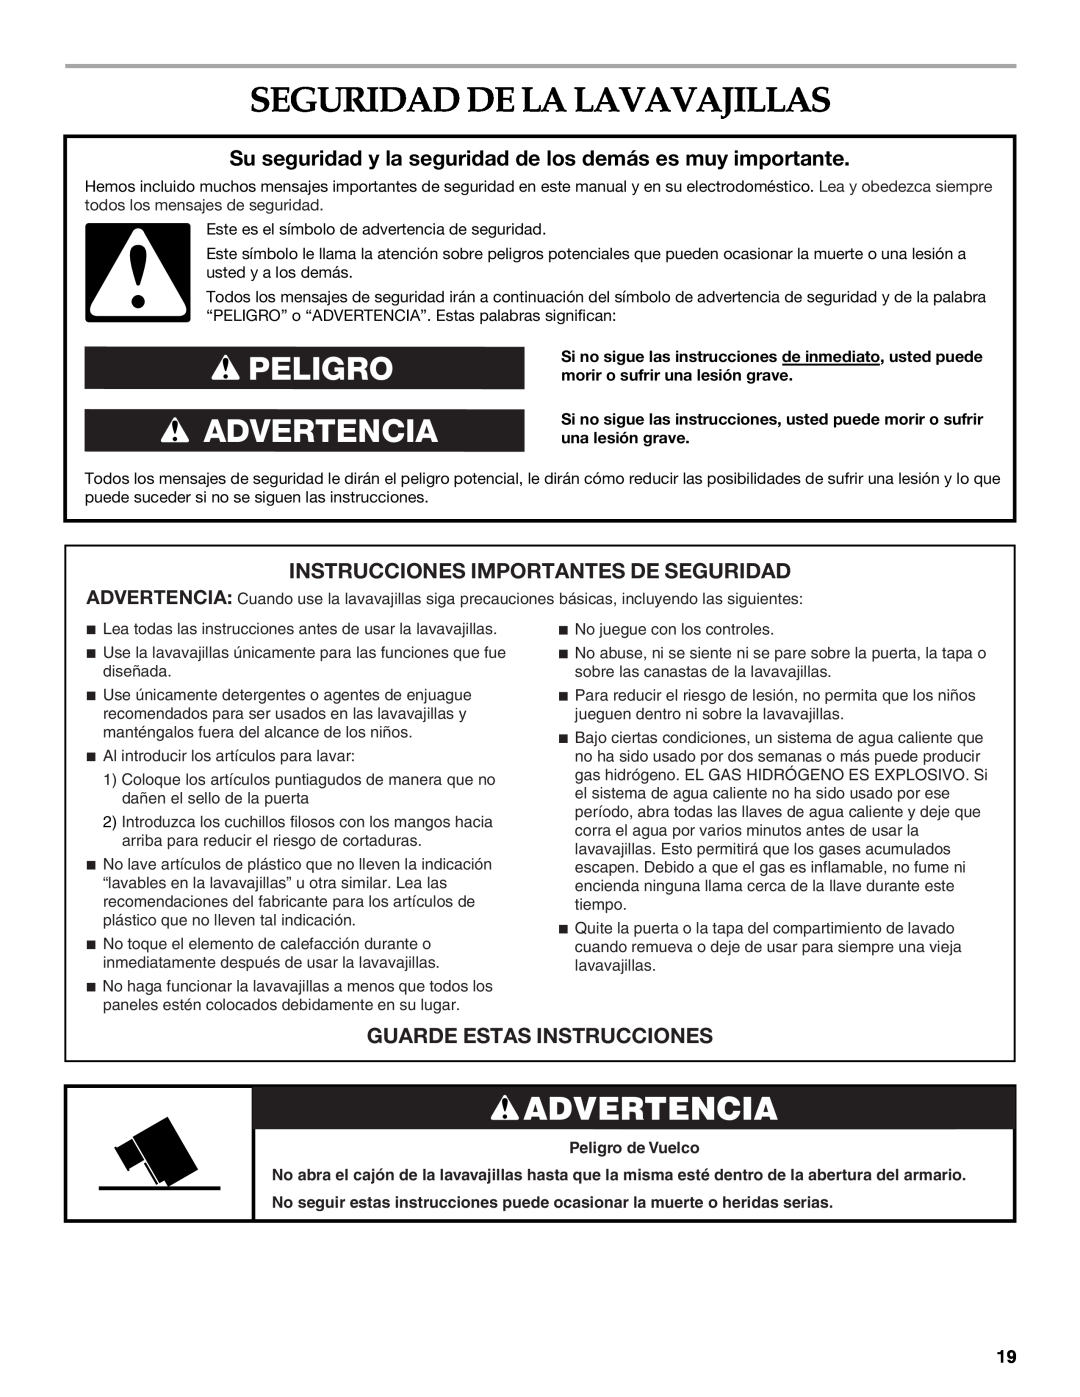 KitchenAid W10118037B Seguridad De La Lavavajillas, Advertencia, Instrucciones Importantes De Seguridad 